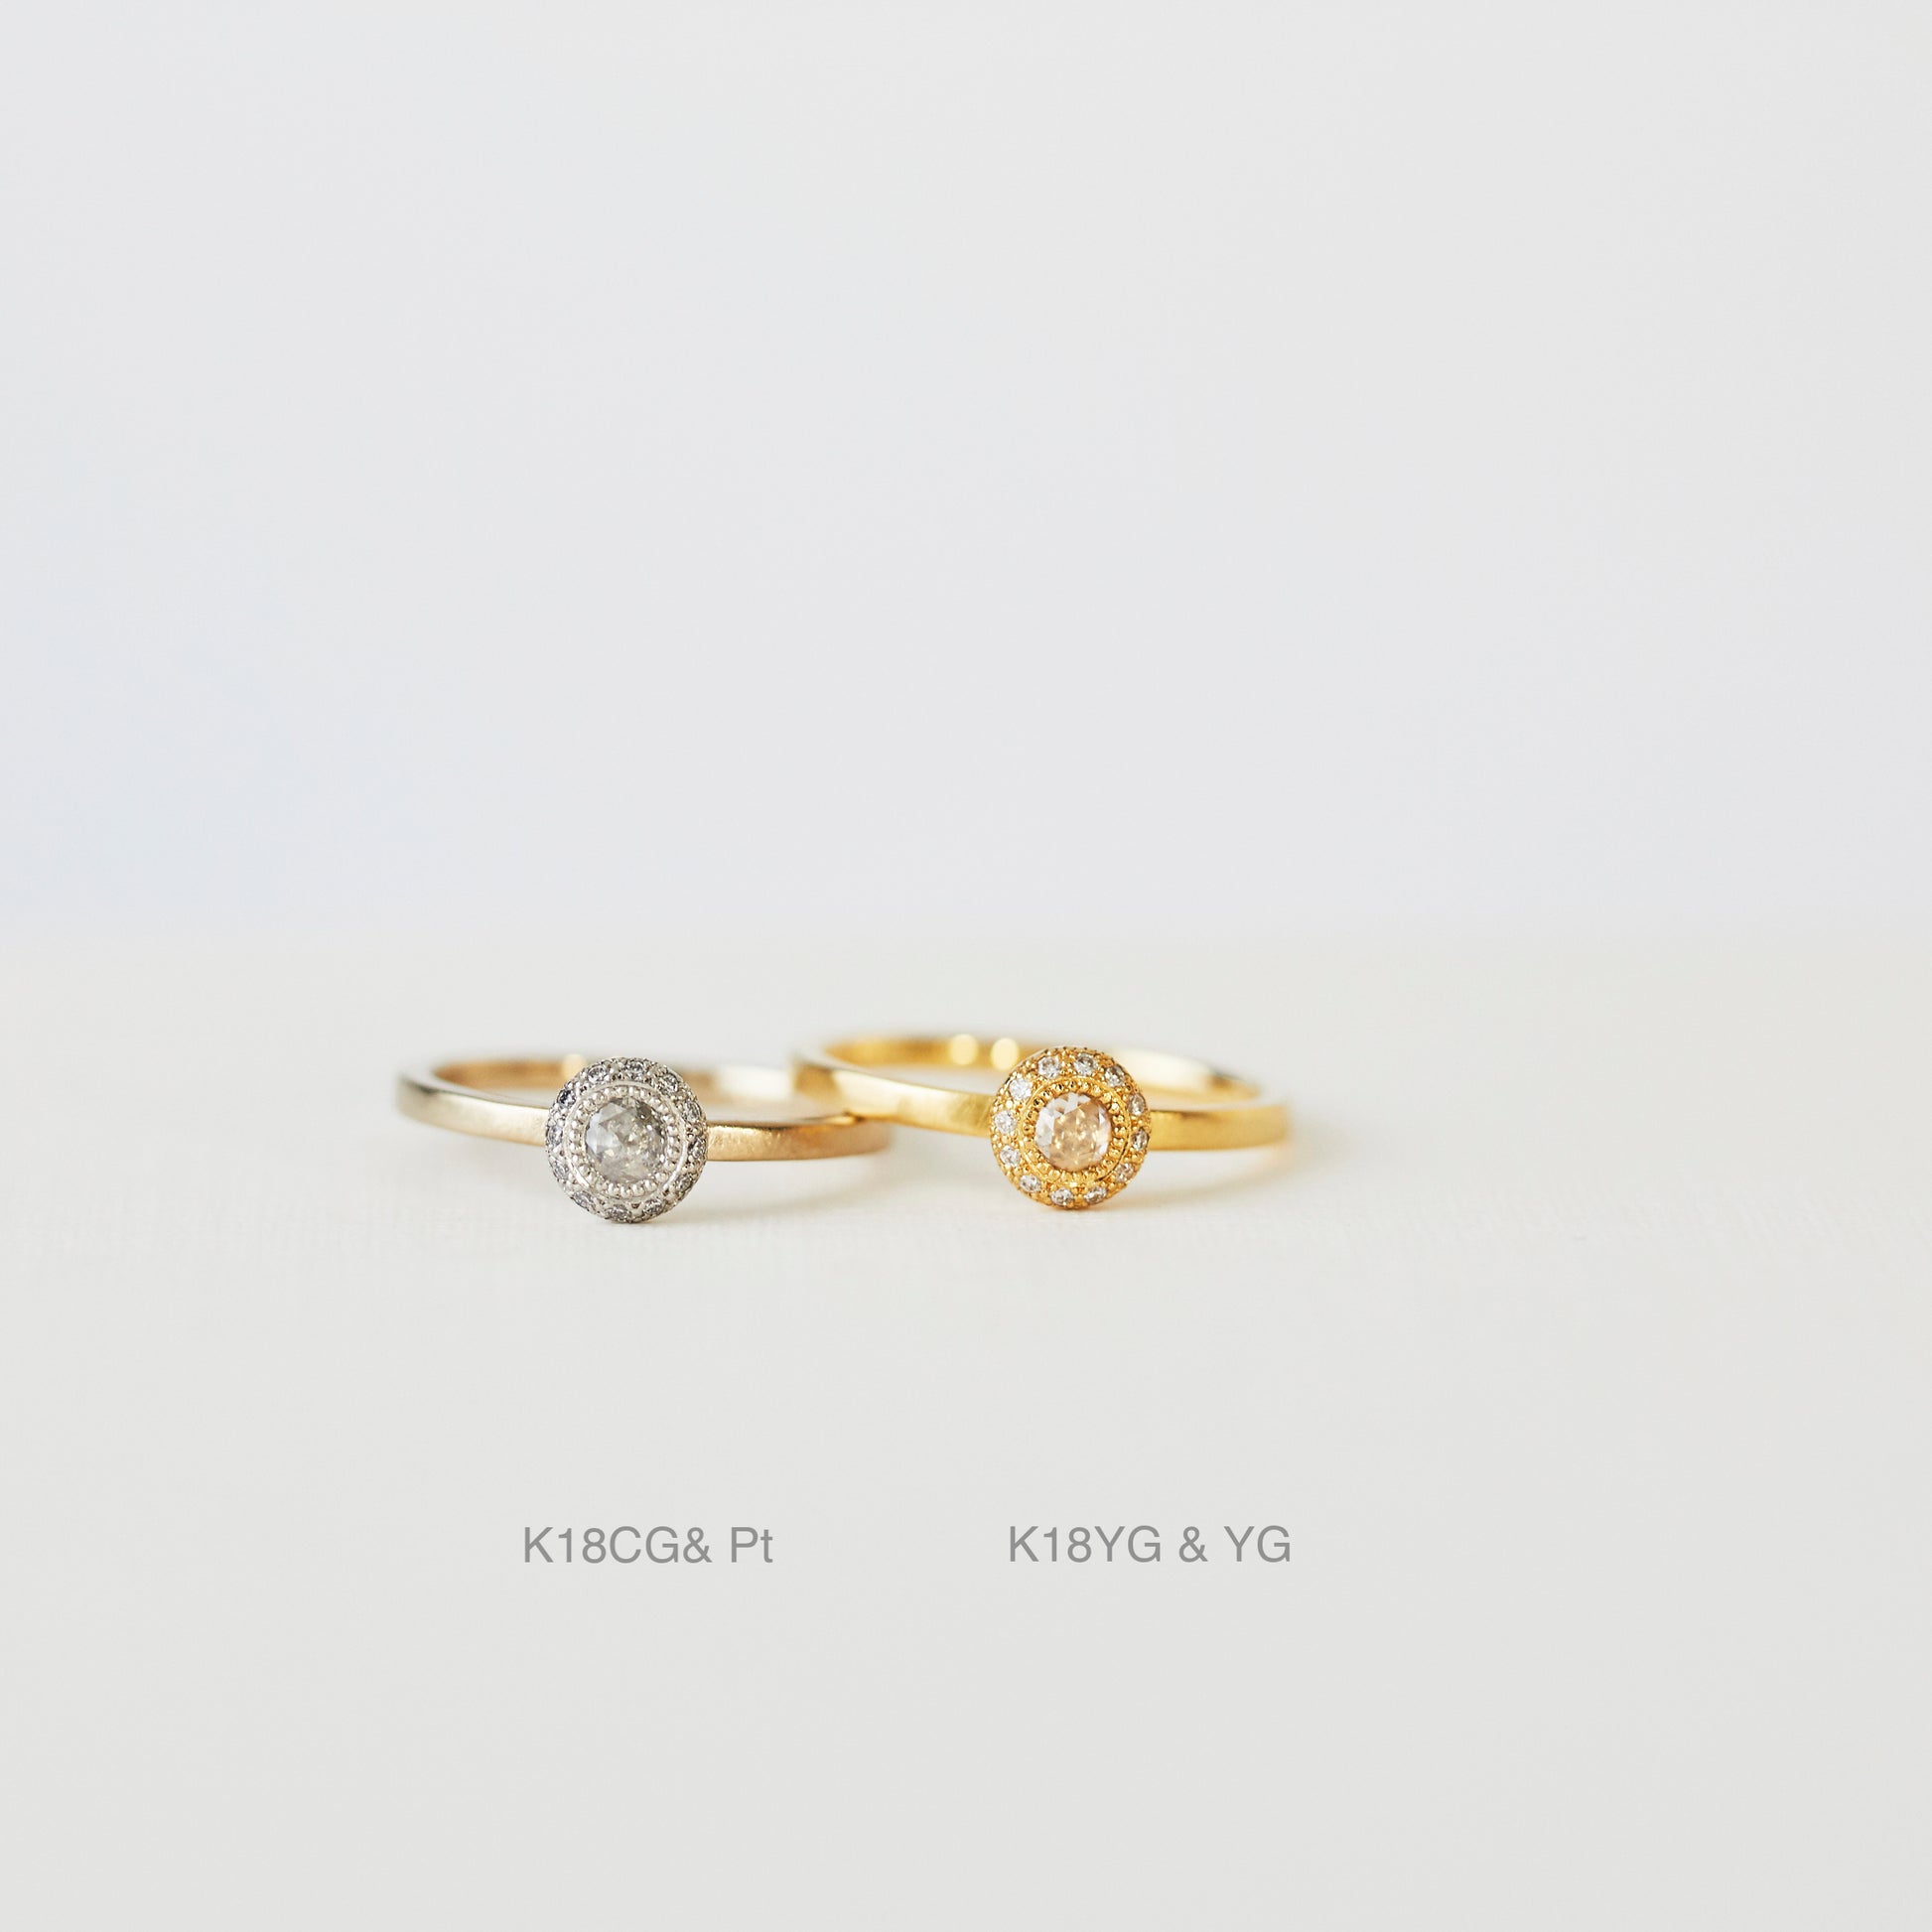 アトリエタマリの婚約指輪「ブートニア」K18CG K18YG